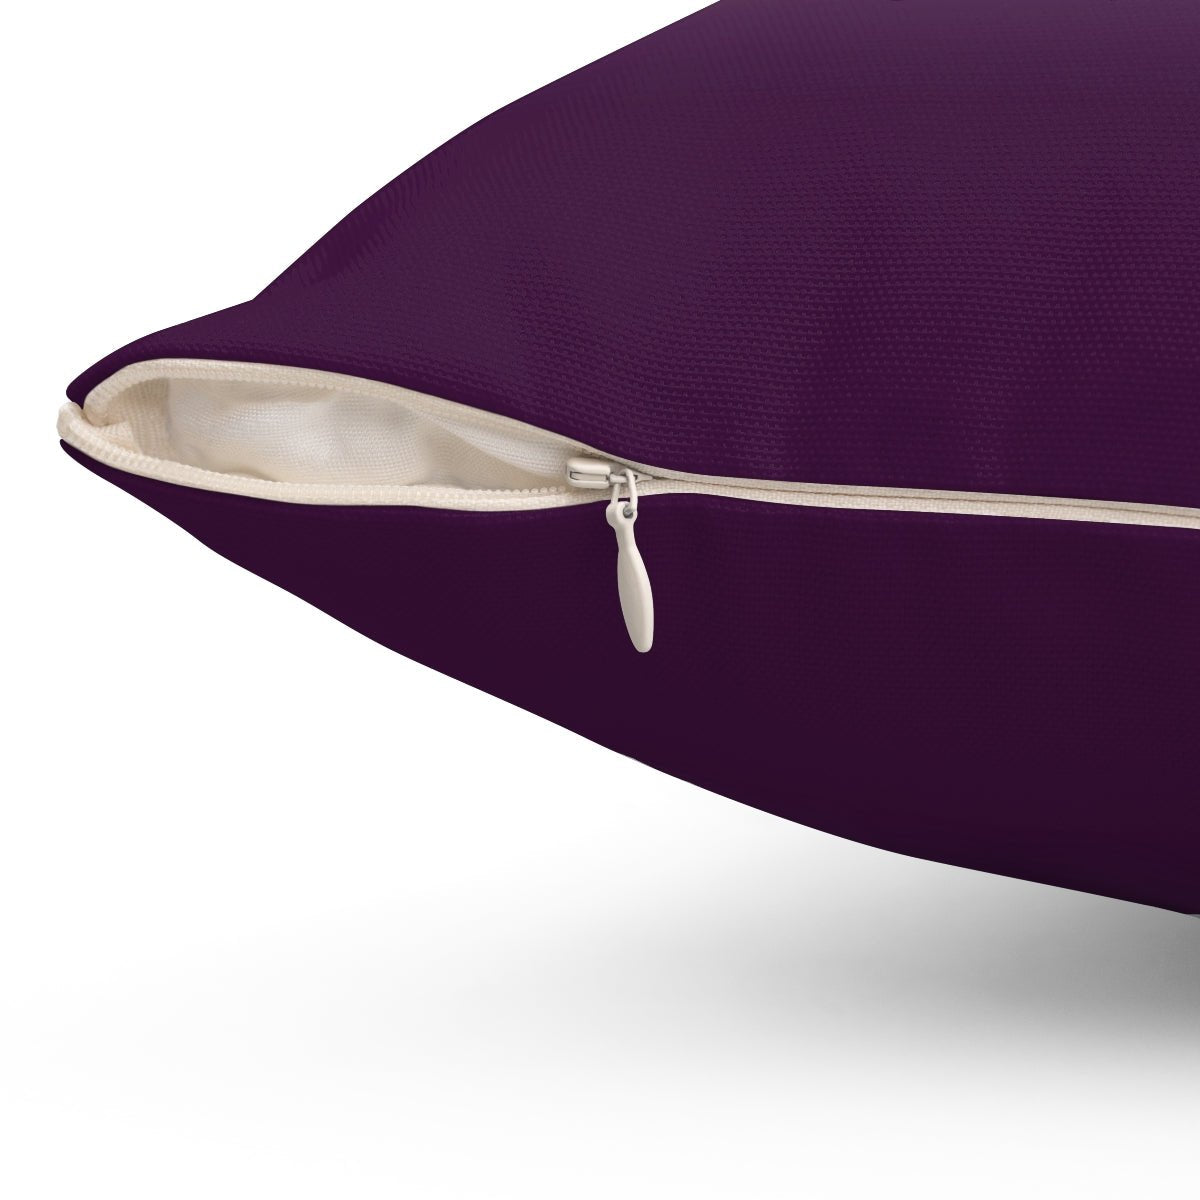 Ombre Eggplant Purple Pillow Throw - Cush Potato Pillows